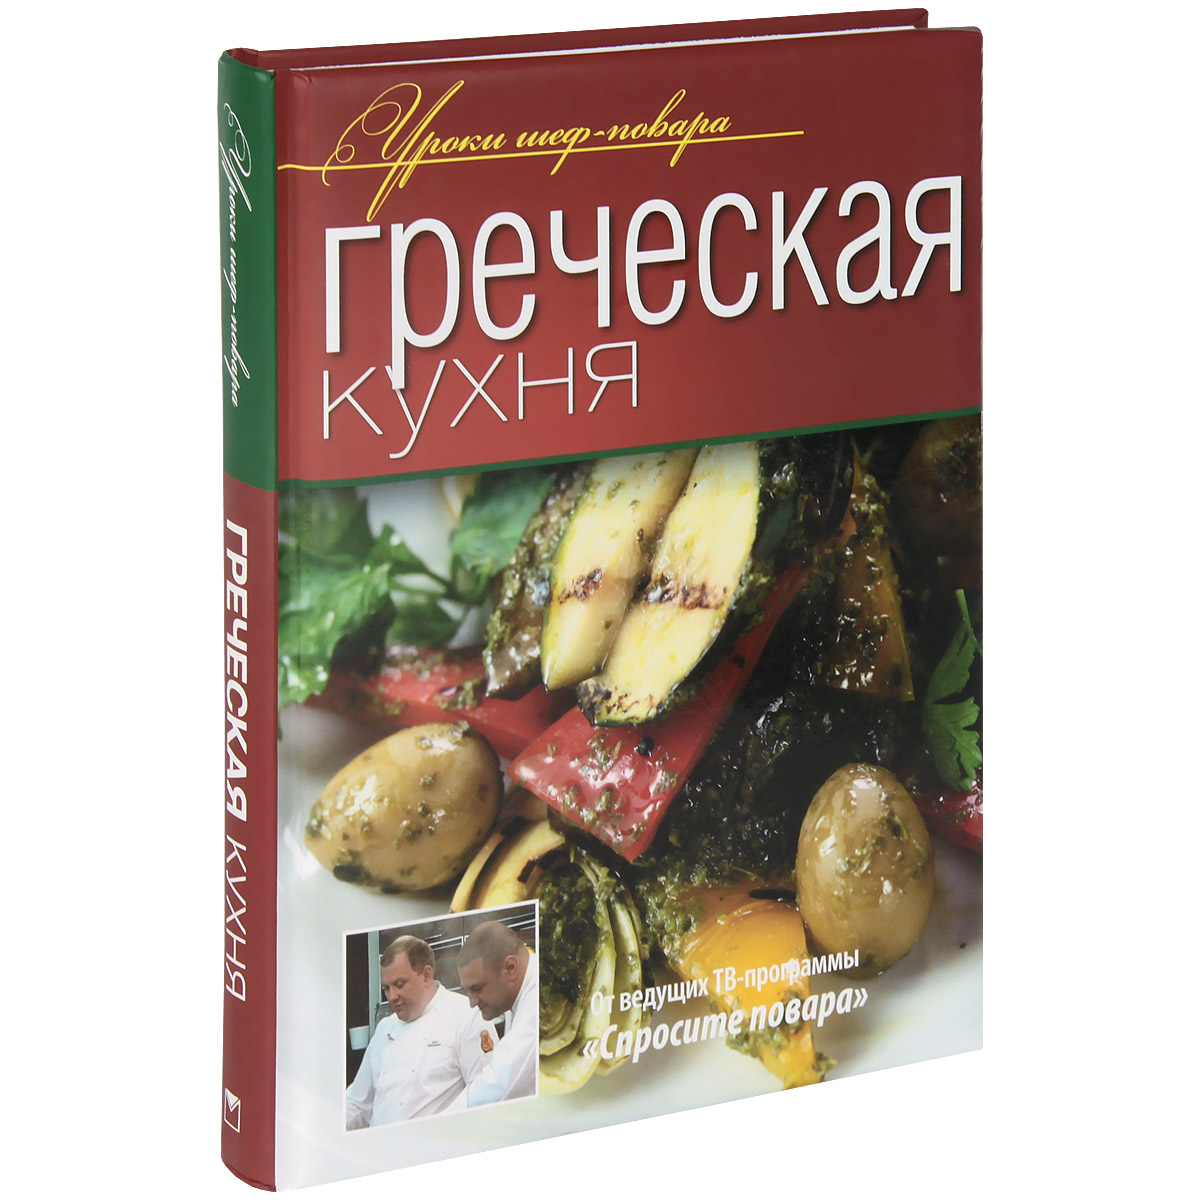 Книга Греческая кухня - купить в книжном интернет магазине OZON.ru по выгодной цене